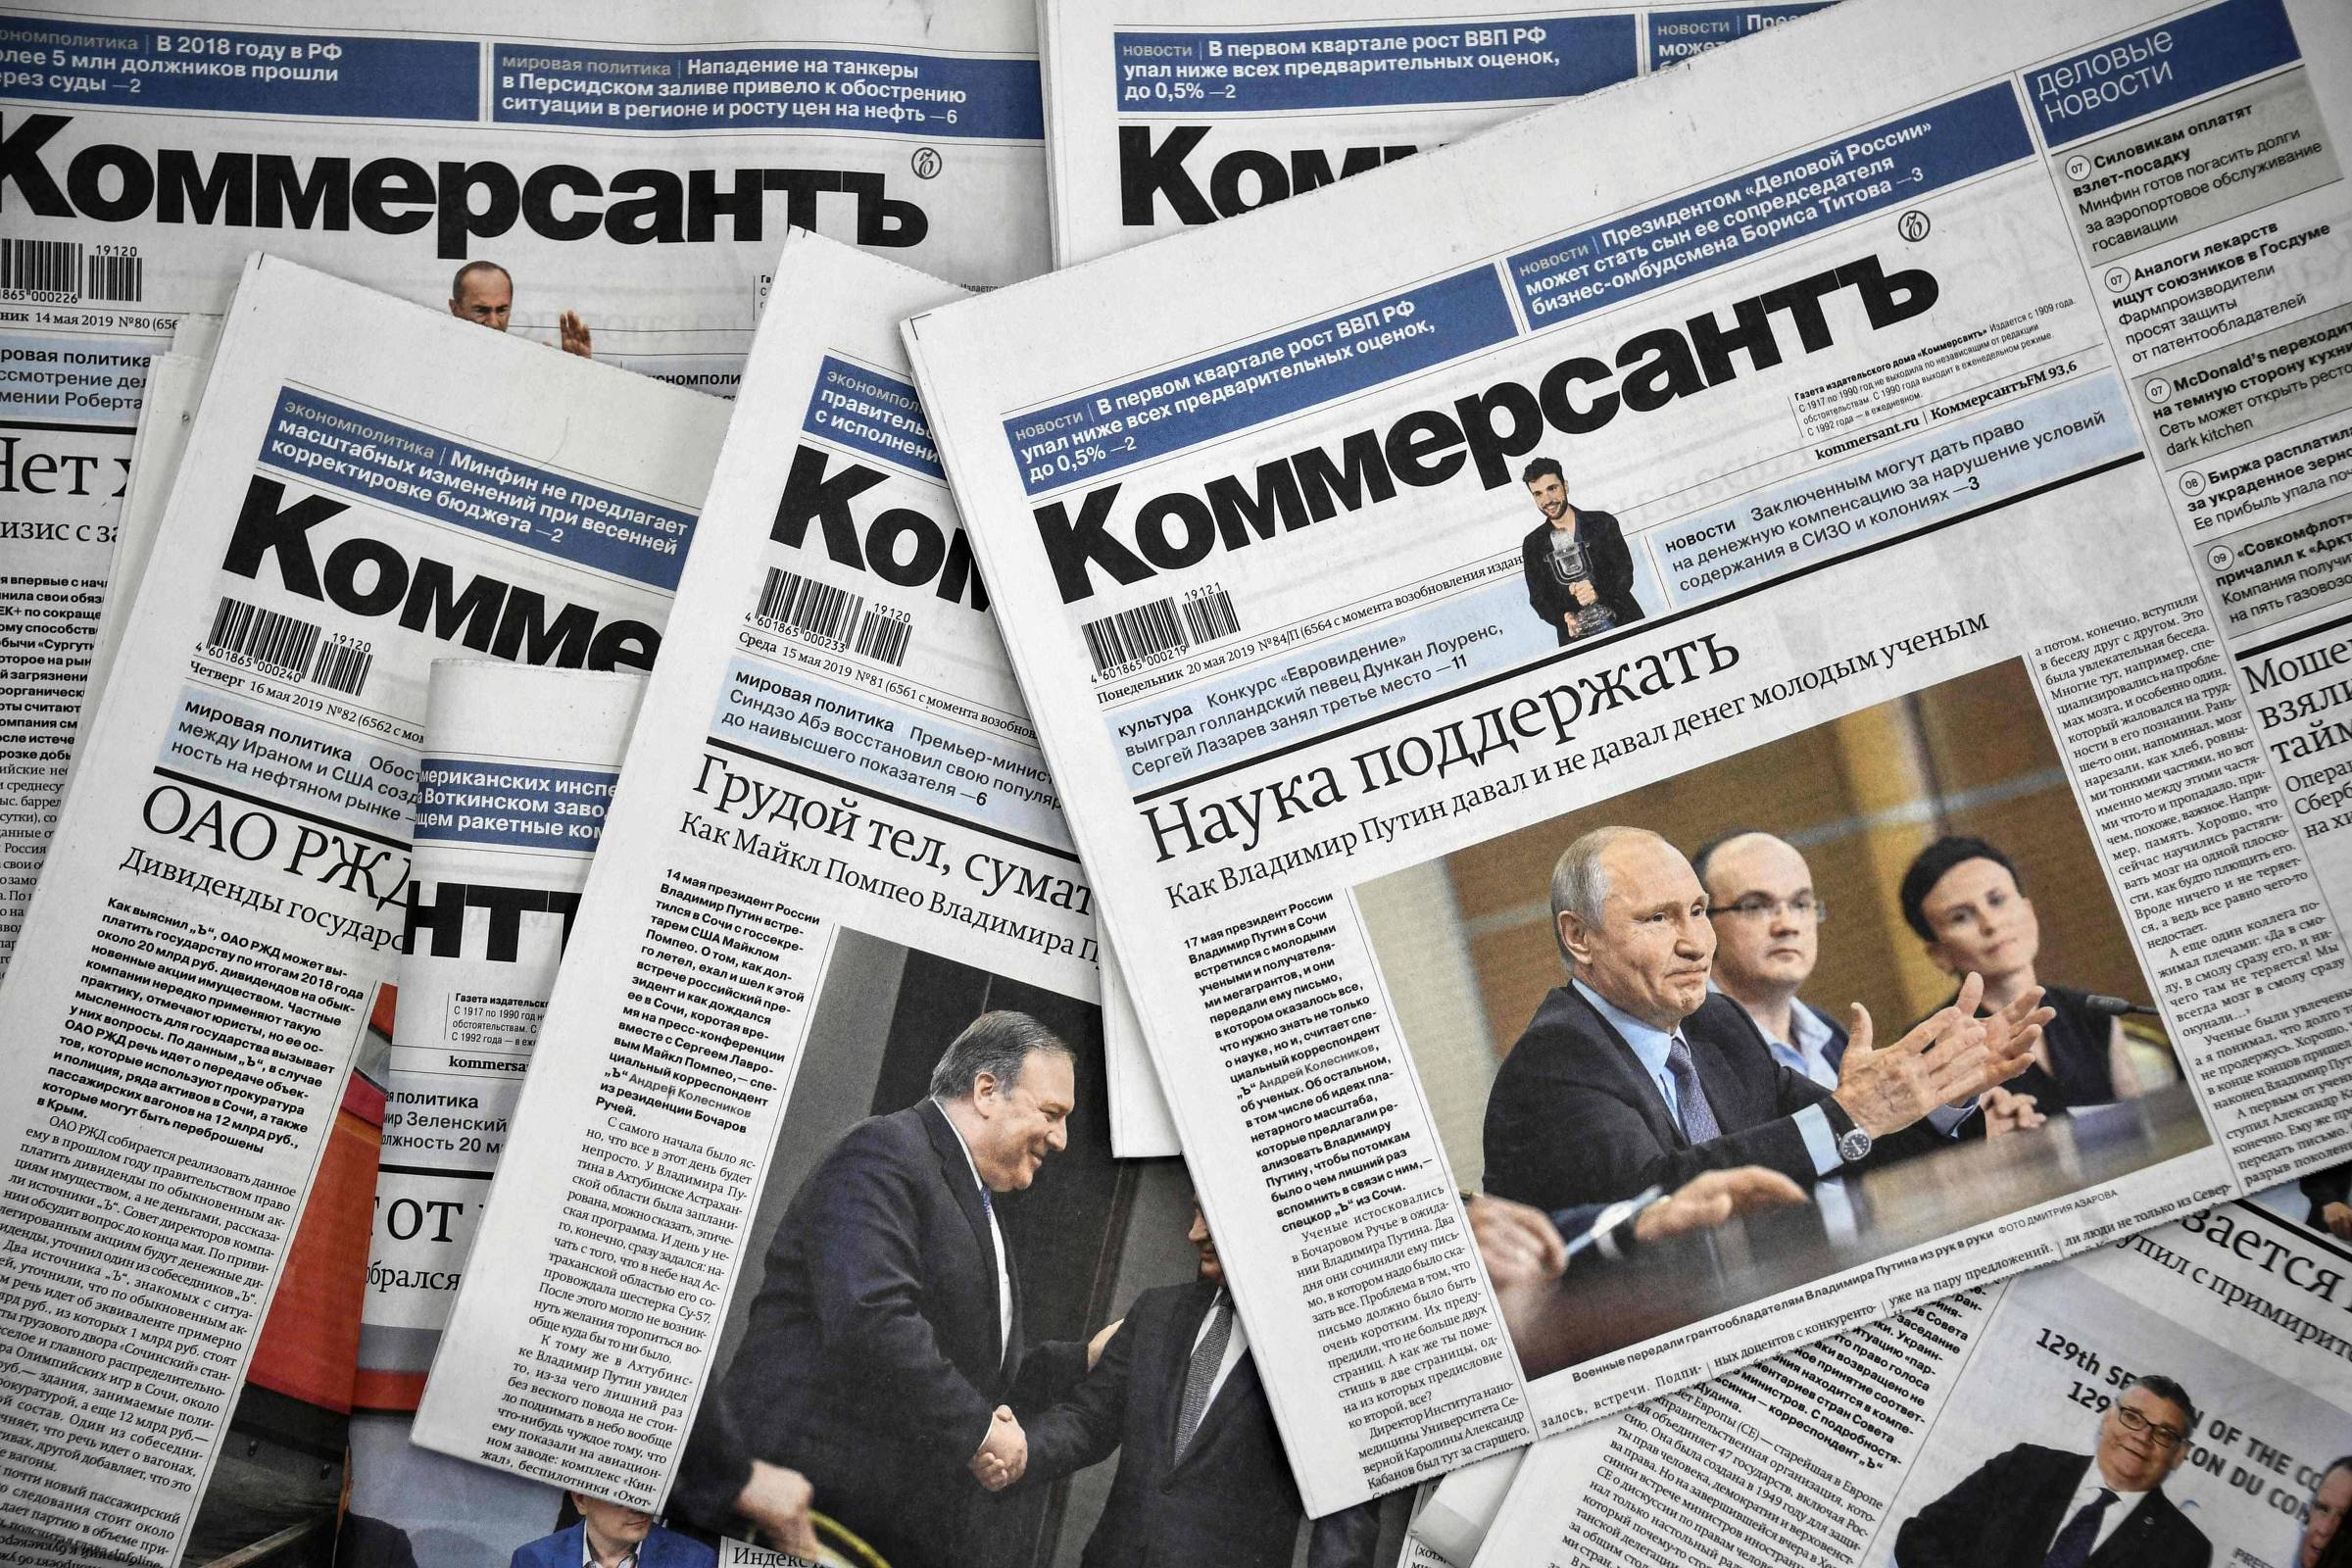 استقالة محررين كبار في صحيفة روسية على وقع تزايد الرقابة فيها